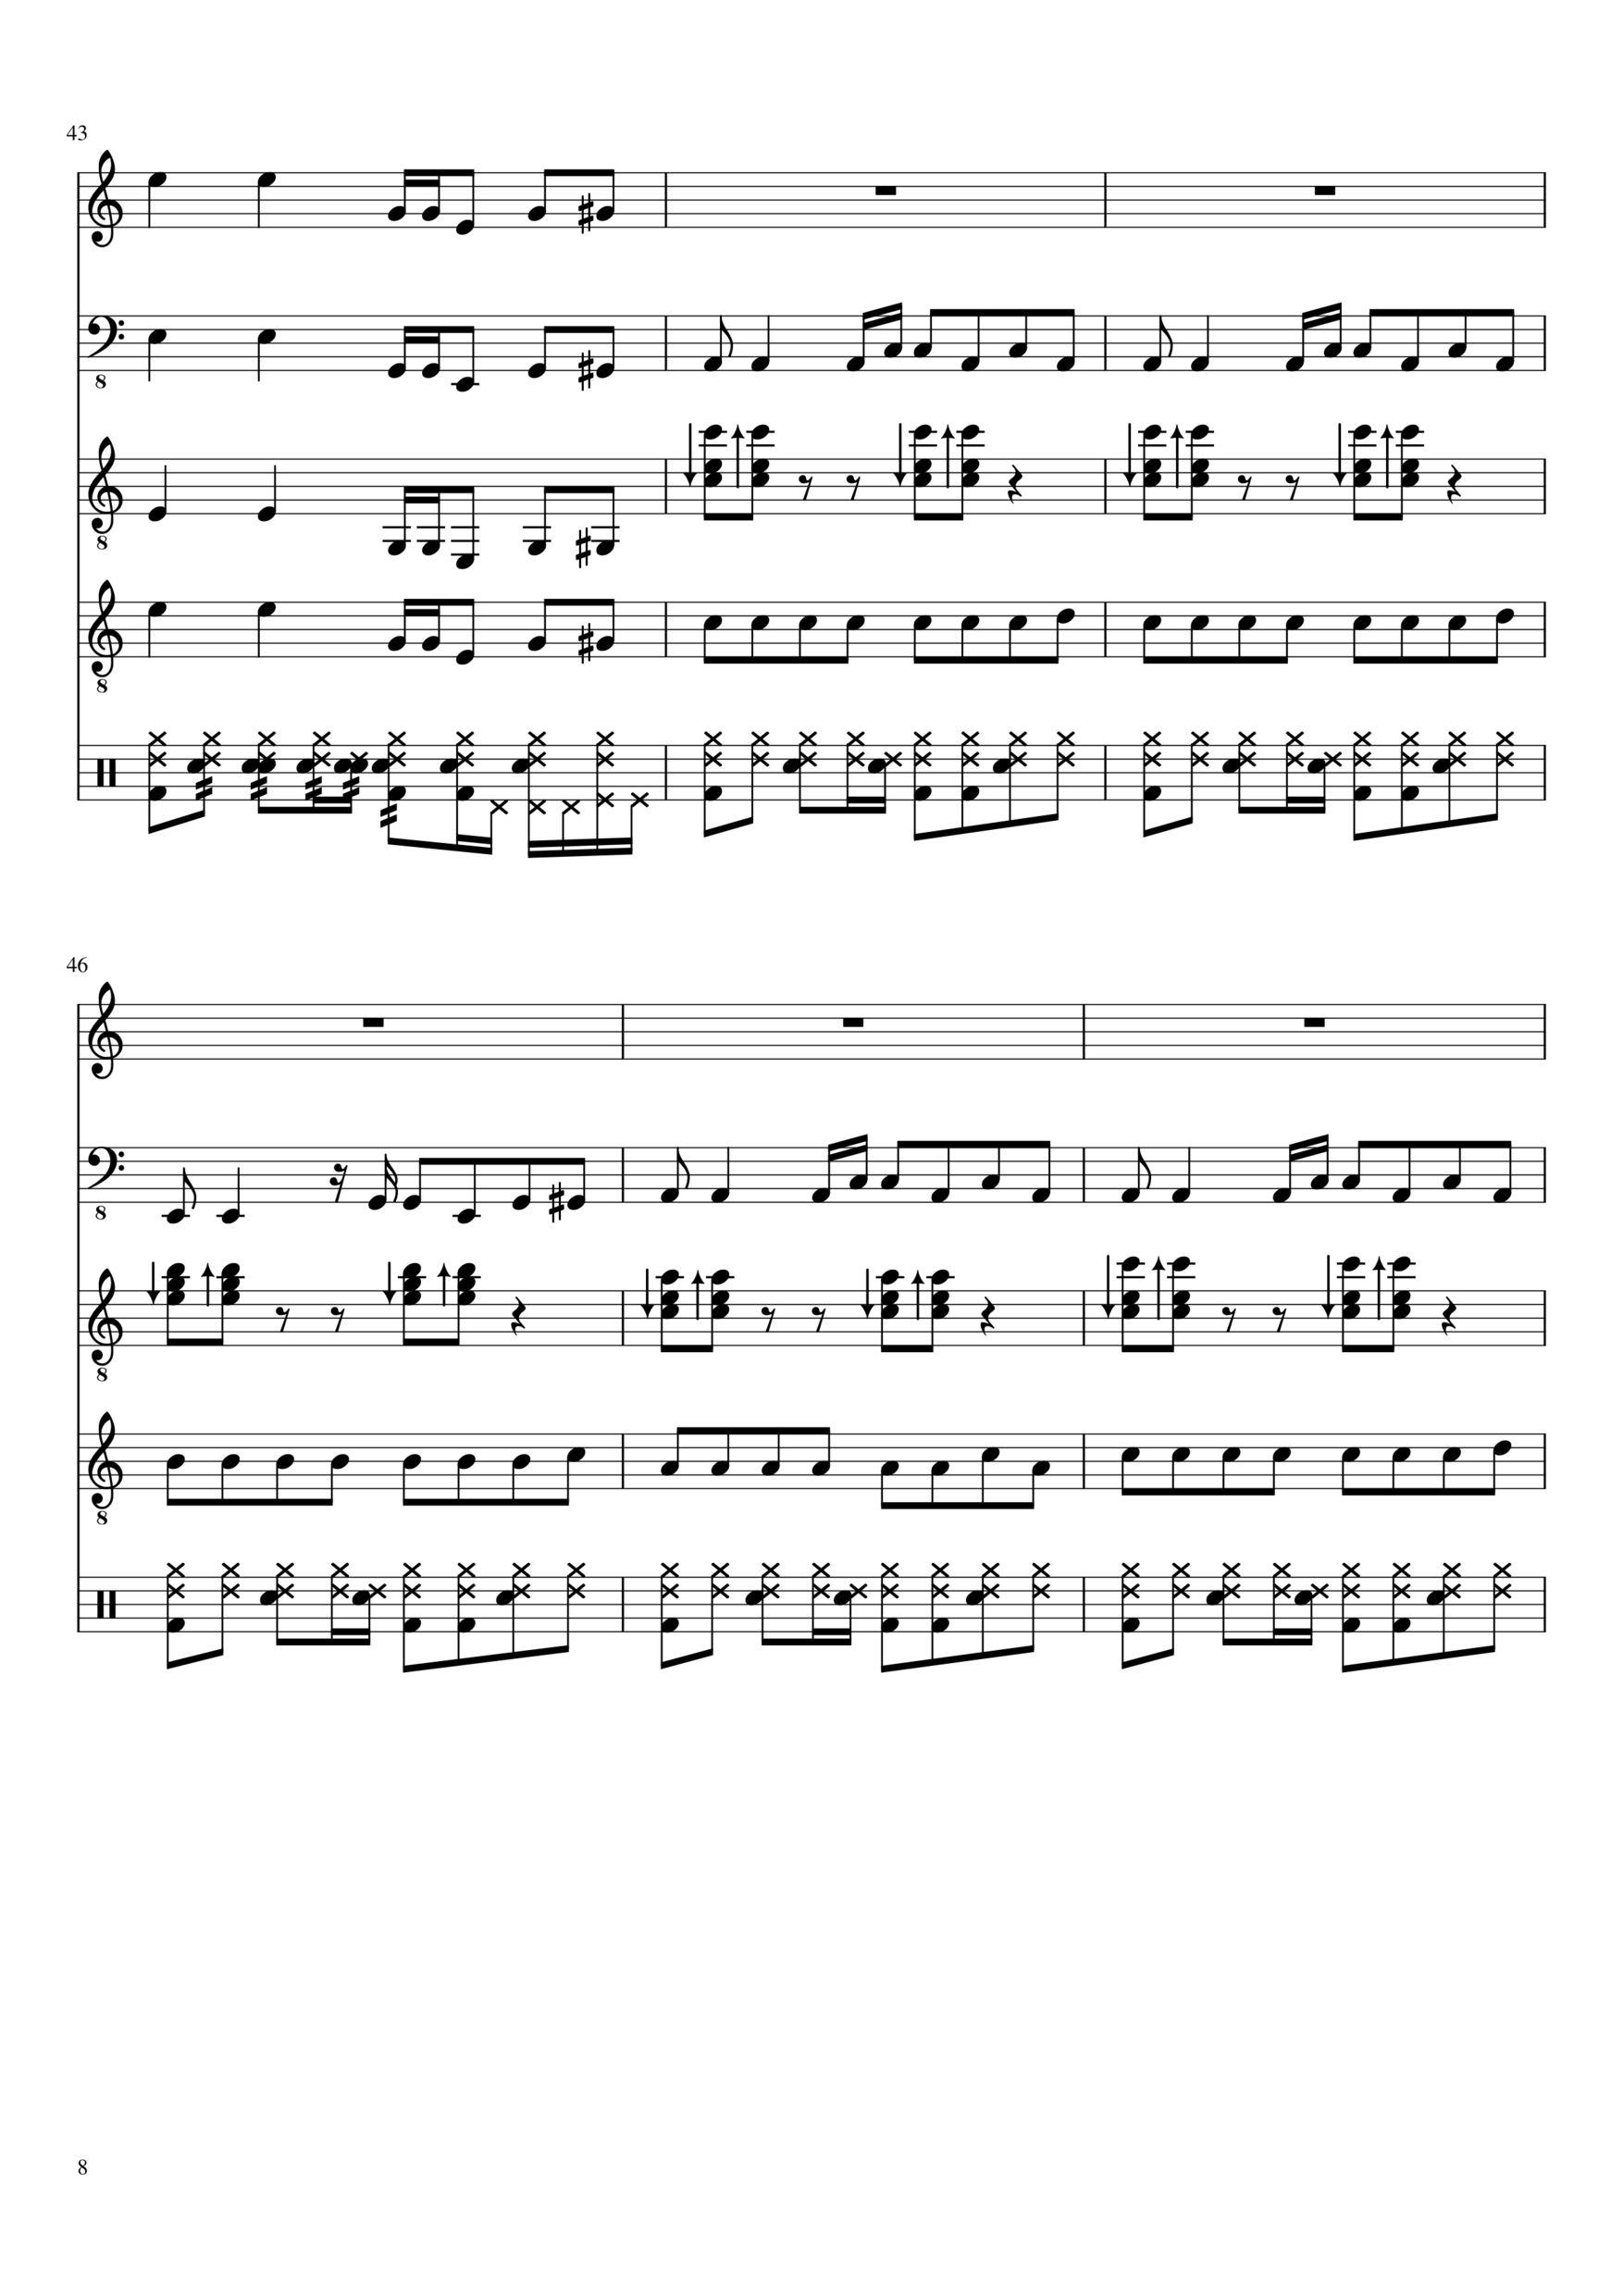 Vechnaya lyubov slide, Image 8